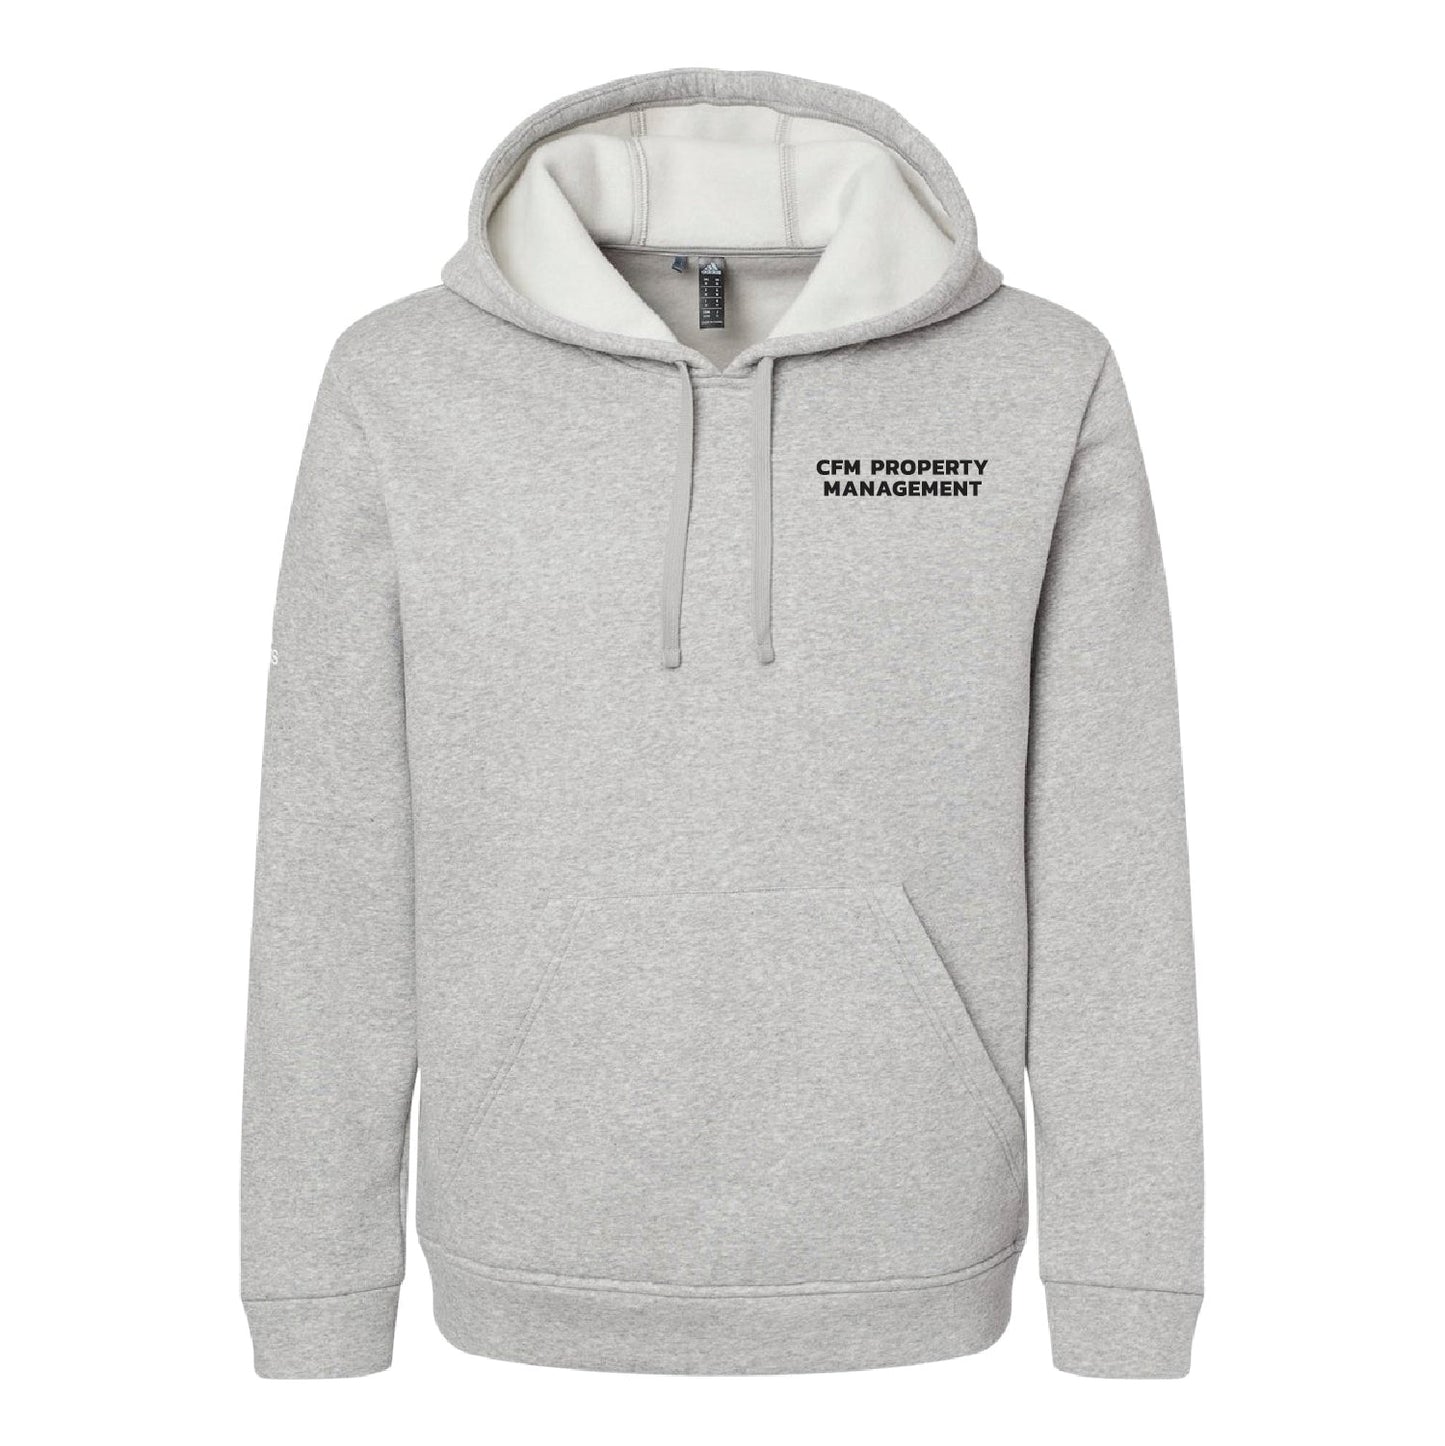 CFM 3 Adidas Fleece Hooded Sweatshirt - DSP On Demand